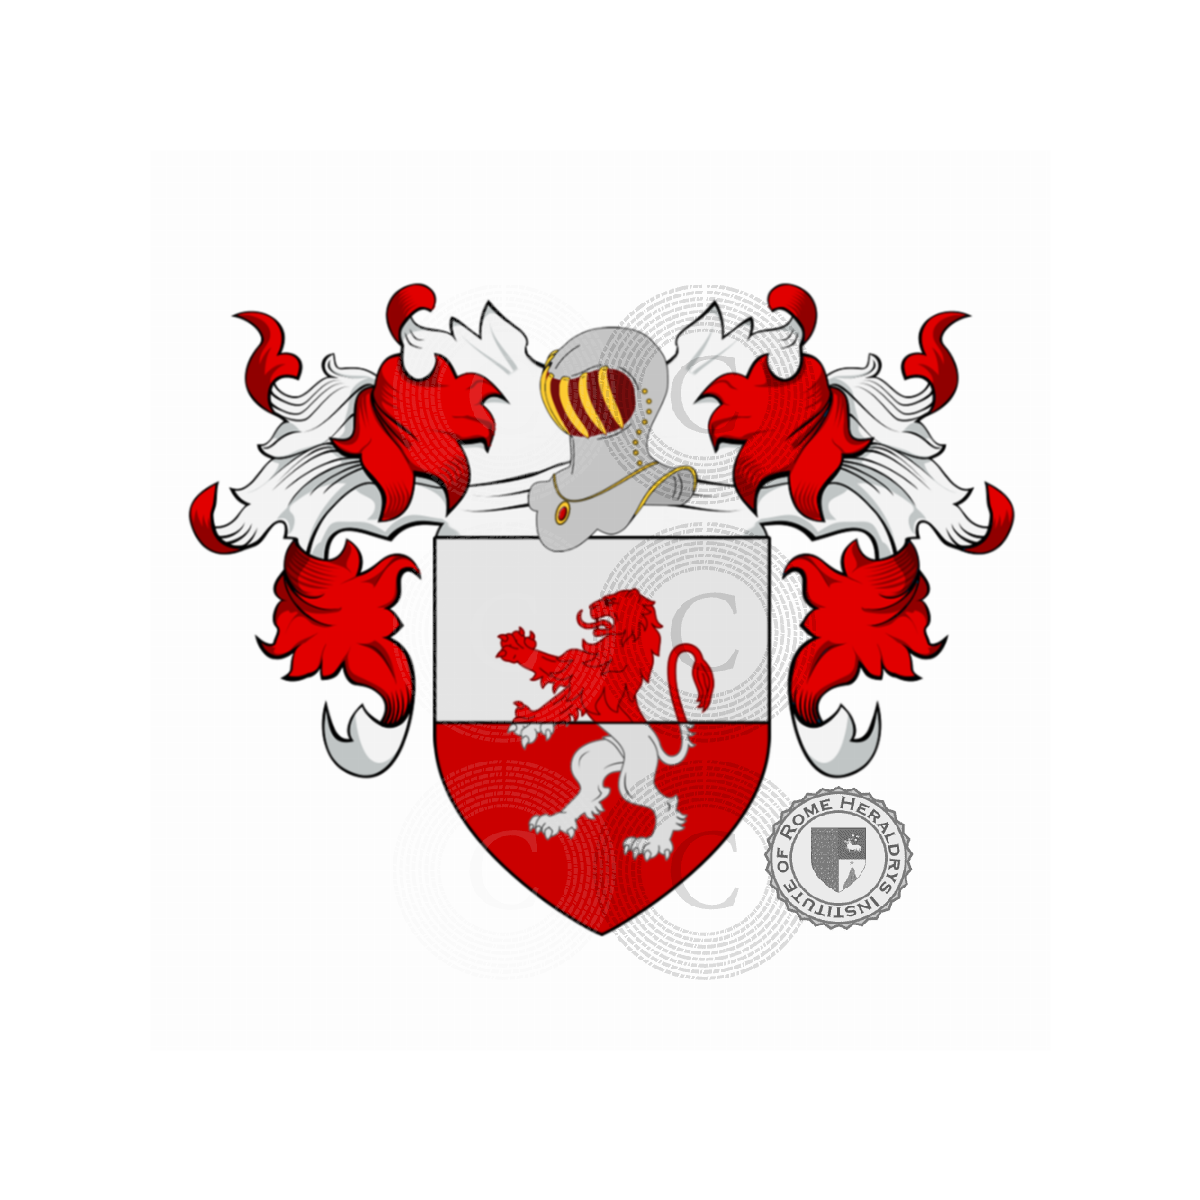 Escudo de la familiaAmodeo, Amidei o Omodei (Sicilia, Toscana), Amidei,Huomodei,Omodei